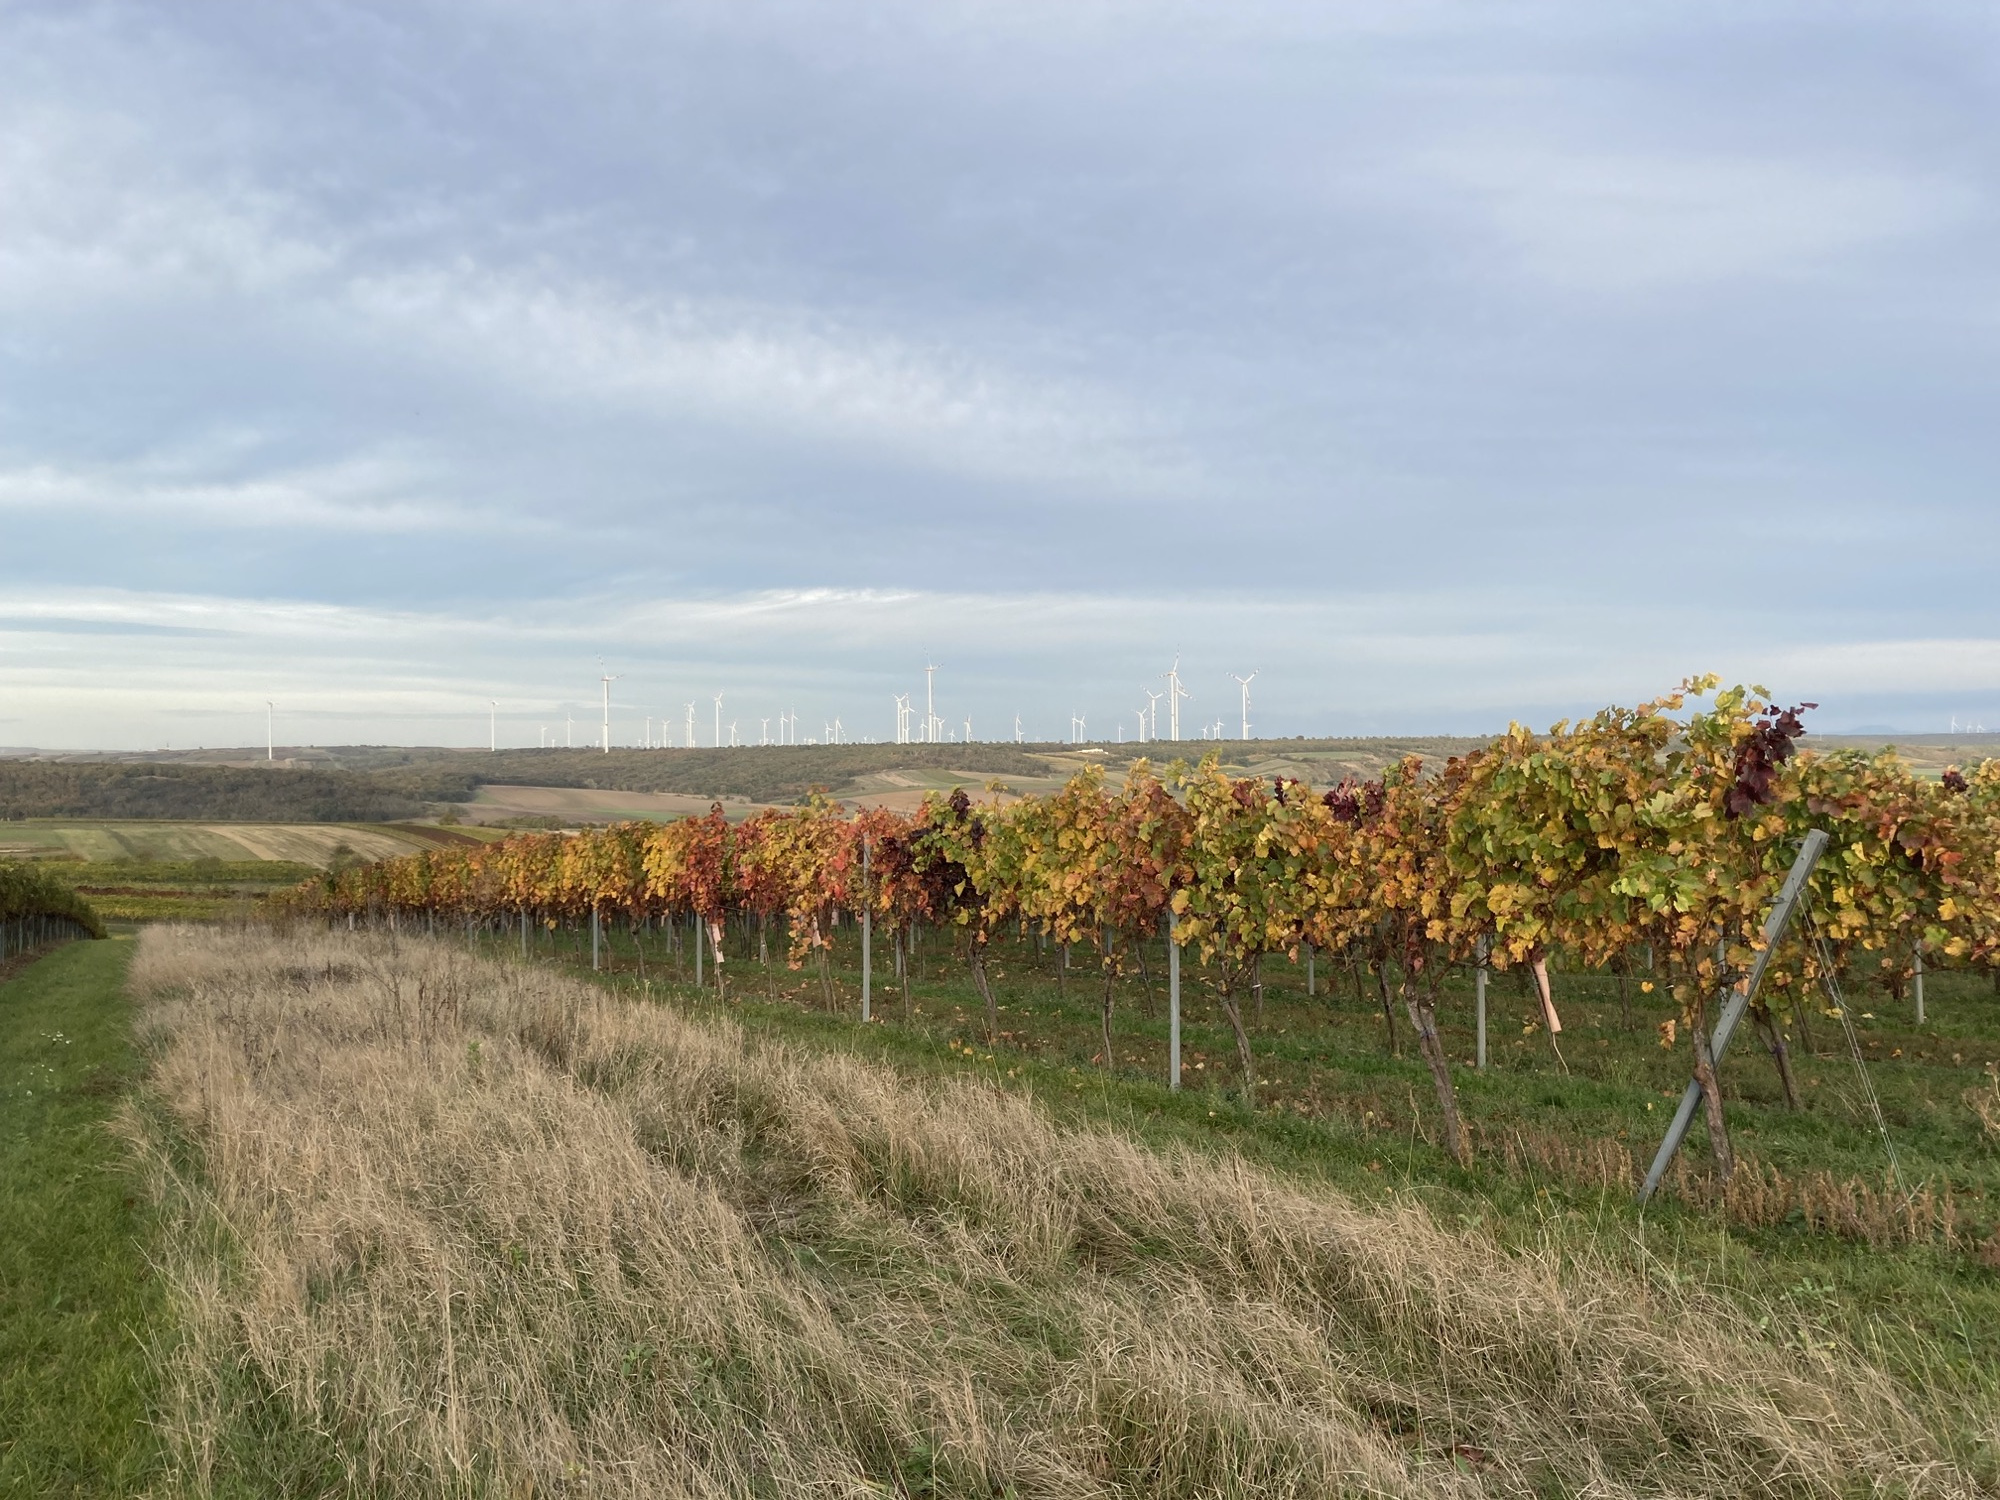 weite Aussicht über die Weinberge, die Weinstöcke leuchten in Schattierungen von grün, gelb, orange und rot, im Hintergrund sind unzählige Windkraftanlagen zu sehen